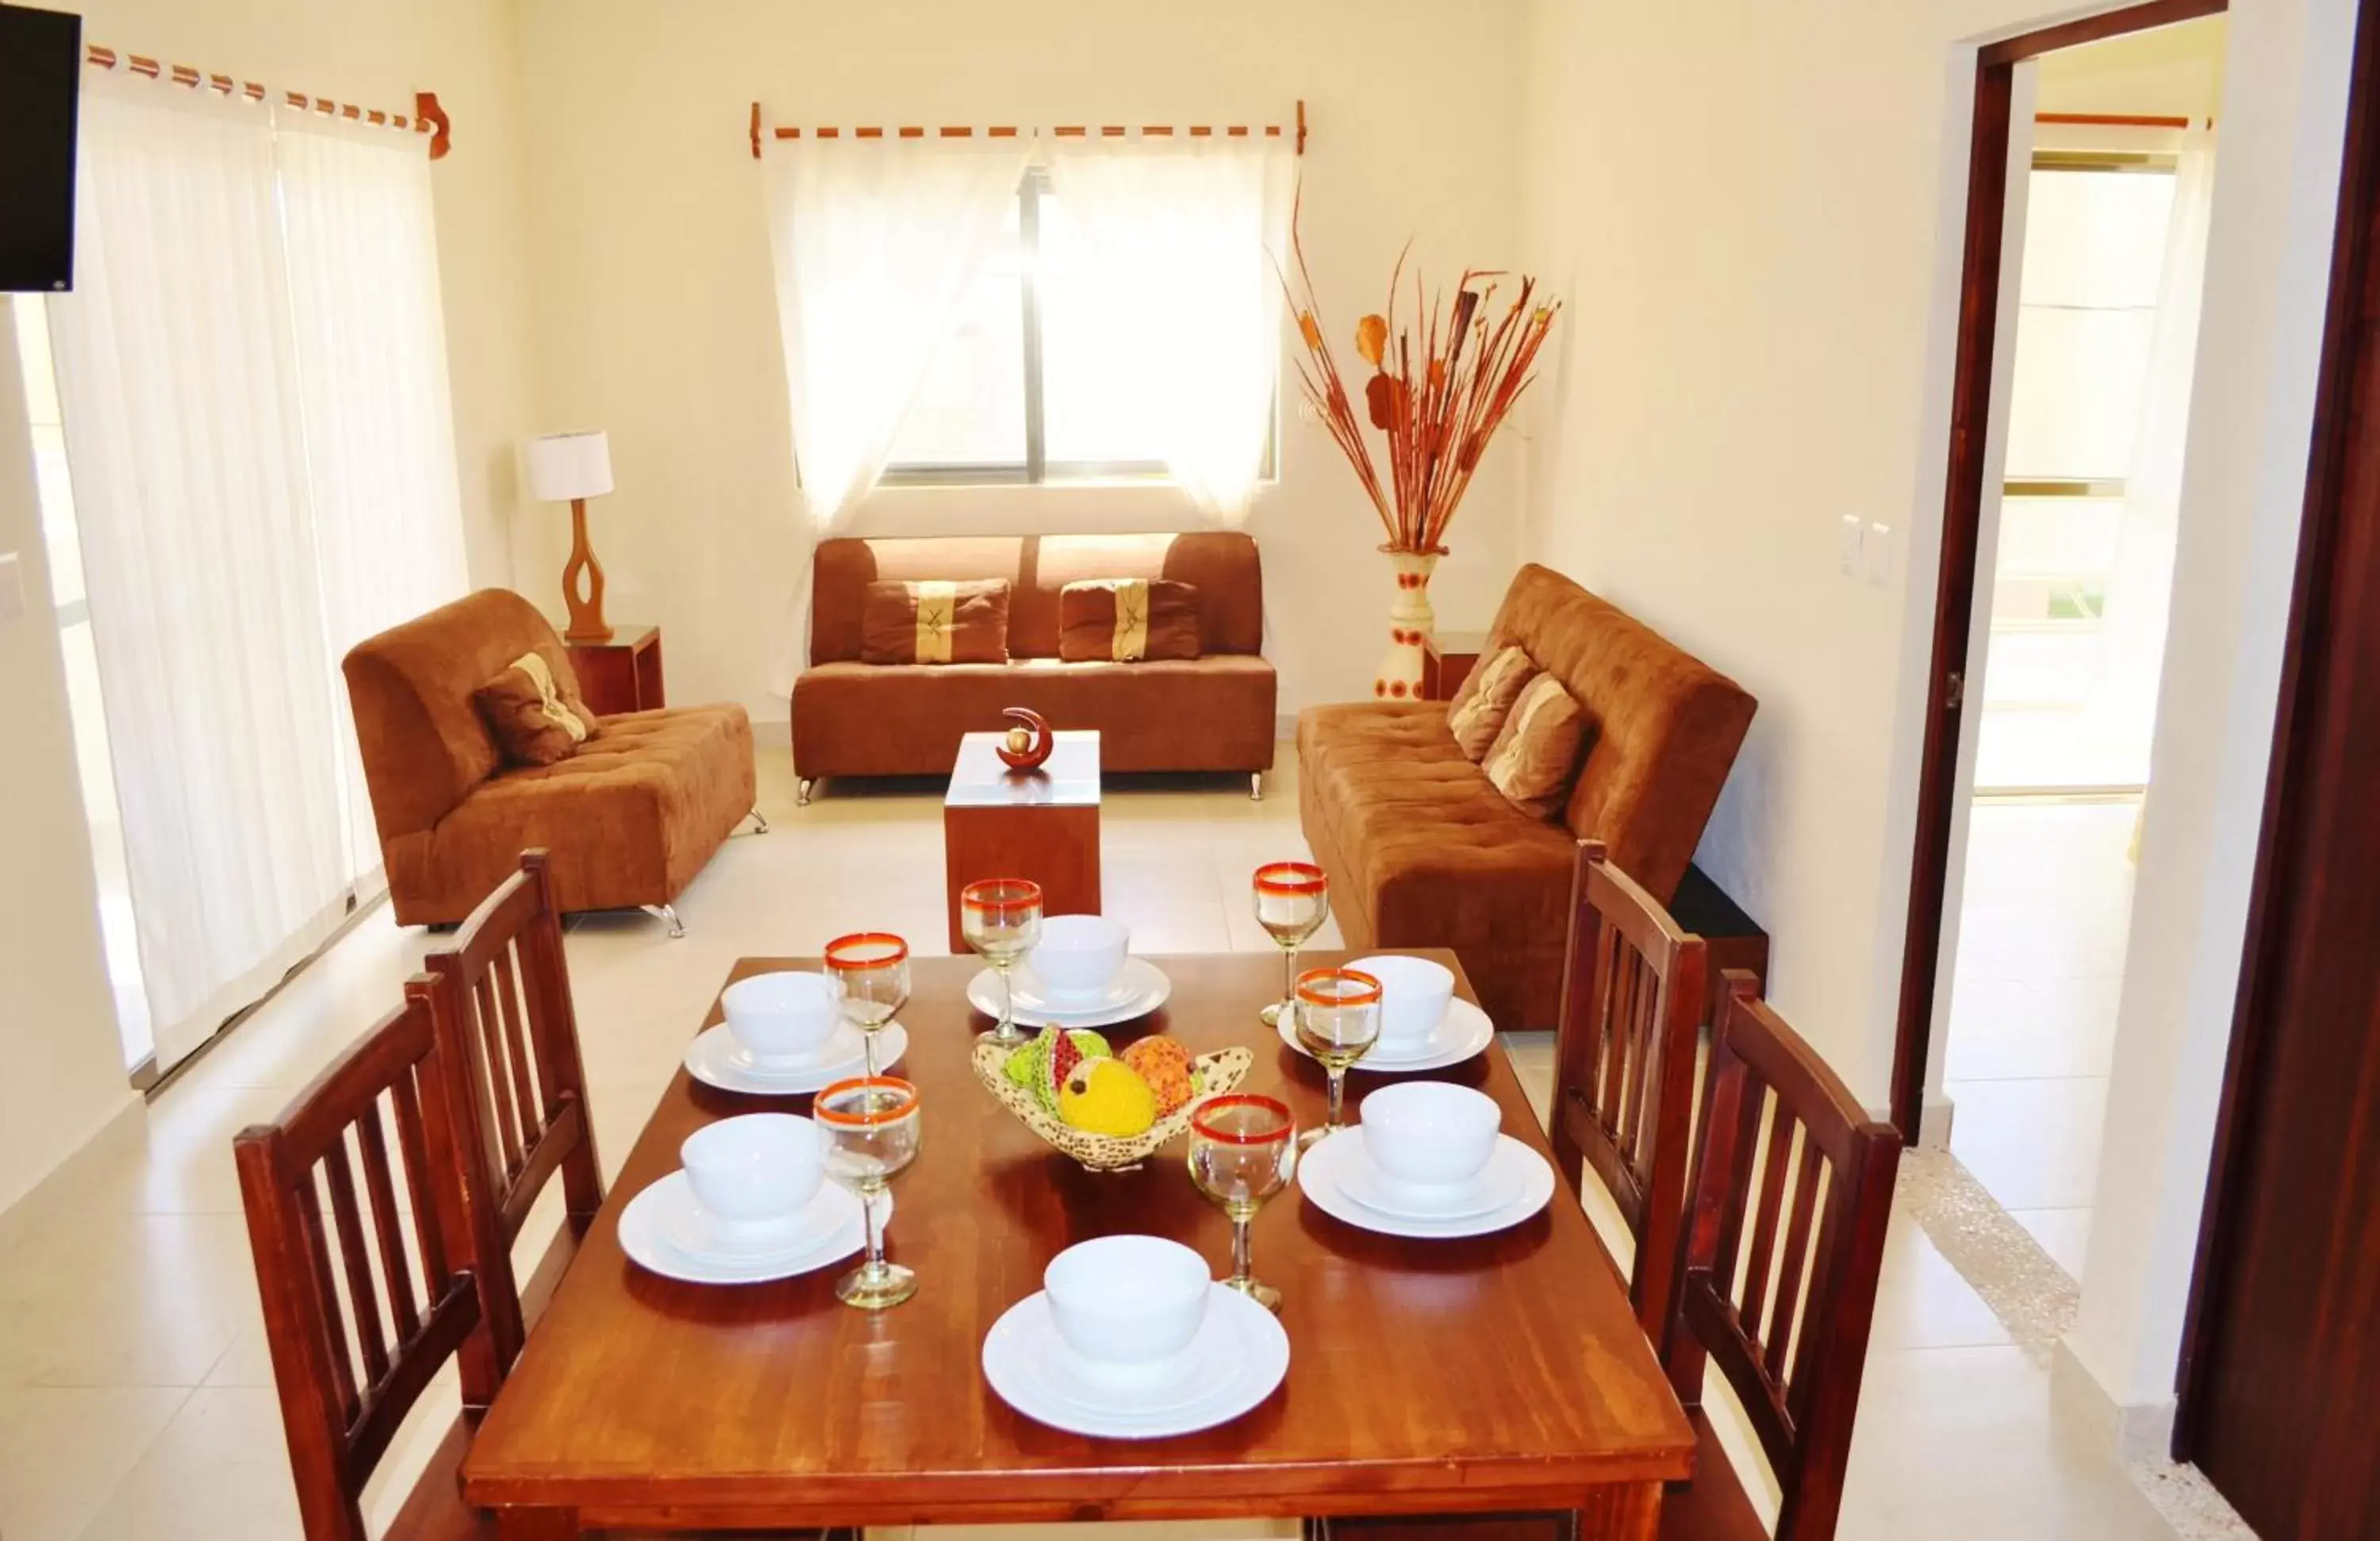 Dining Area in Arrecifes Suites